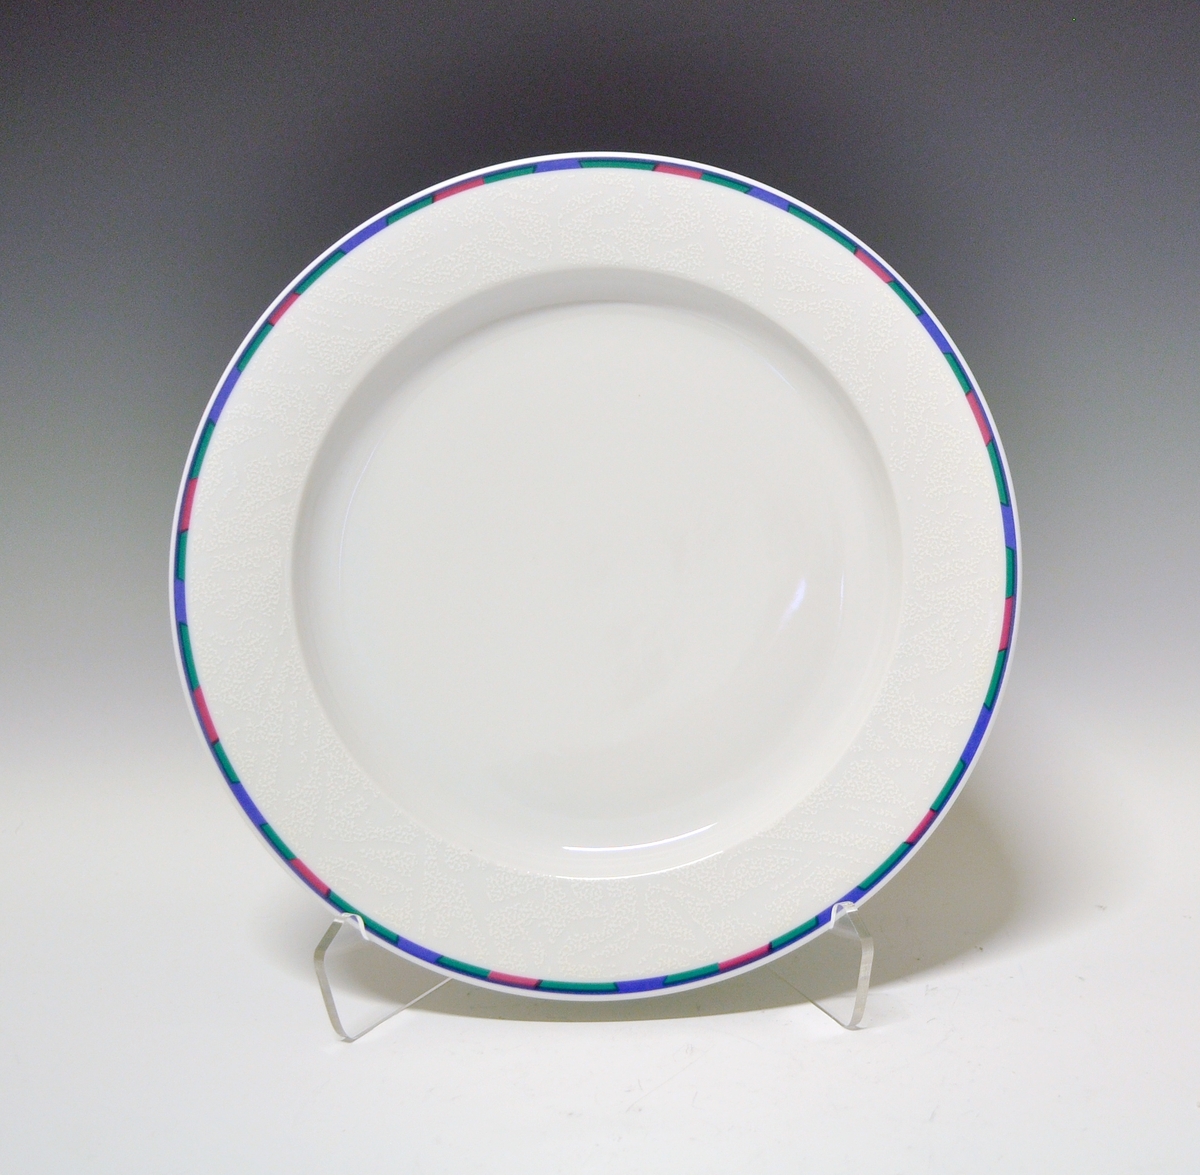 Middagstallerken av porselen med hvit glasur. Dekorert med rand ytterst på fanen i blått, grønt og rosa.
Modell: Saturn av Grete Rønning.